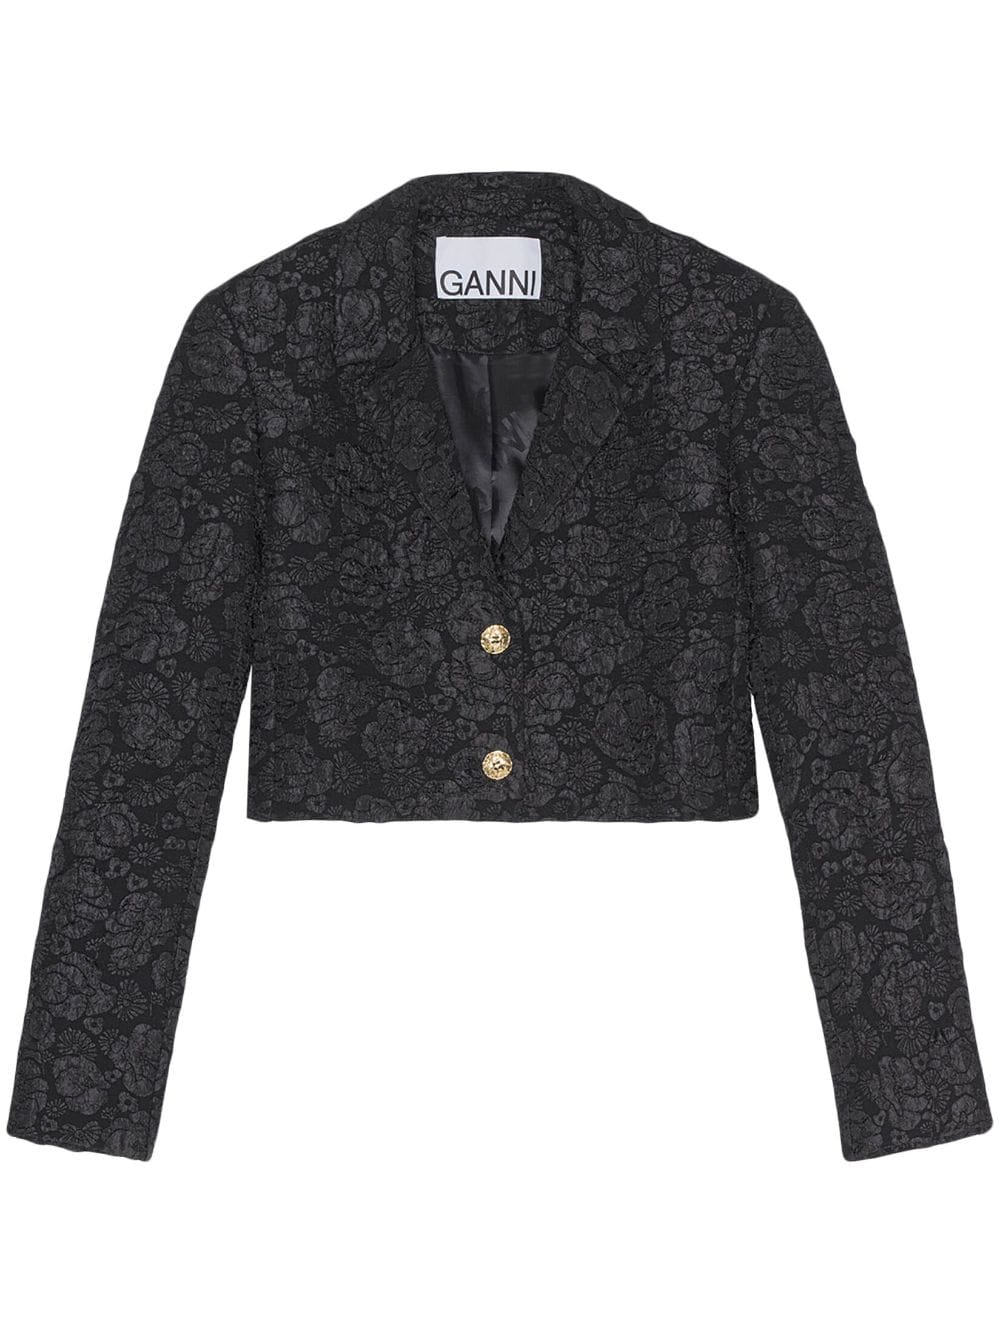 GANNI jacquard cropped jacket - Black von GANNI